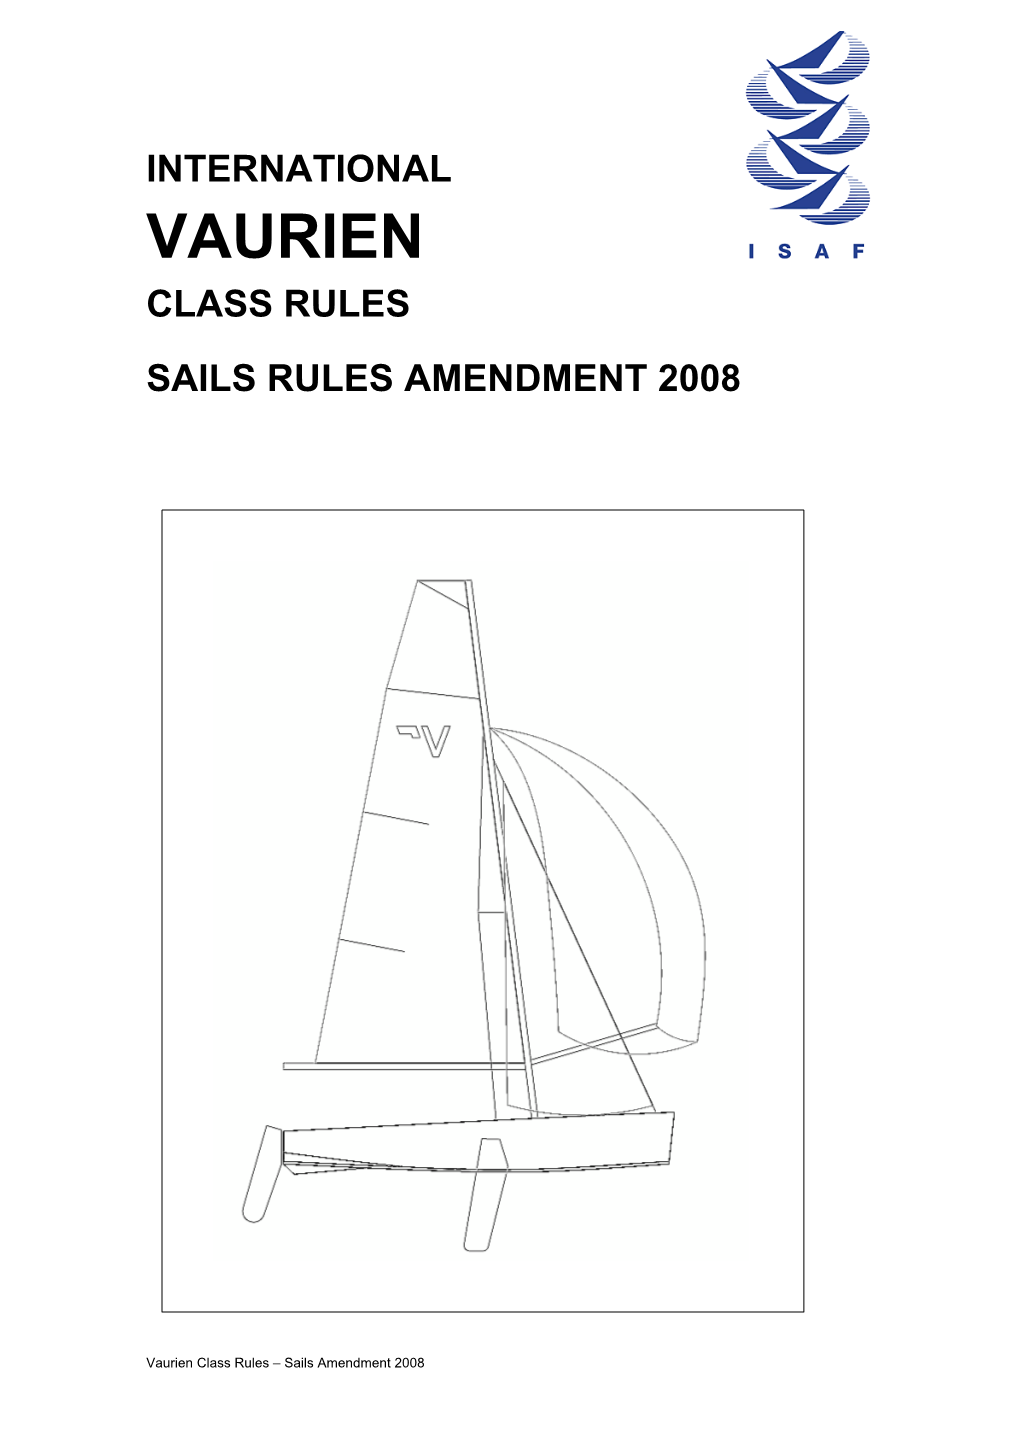 Vaurien Class Rules Sails Rules Amendment 2008